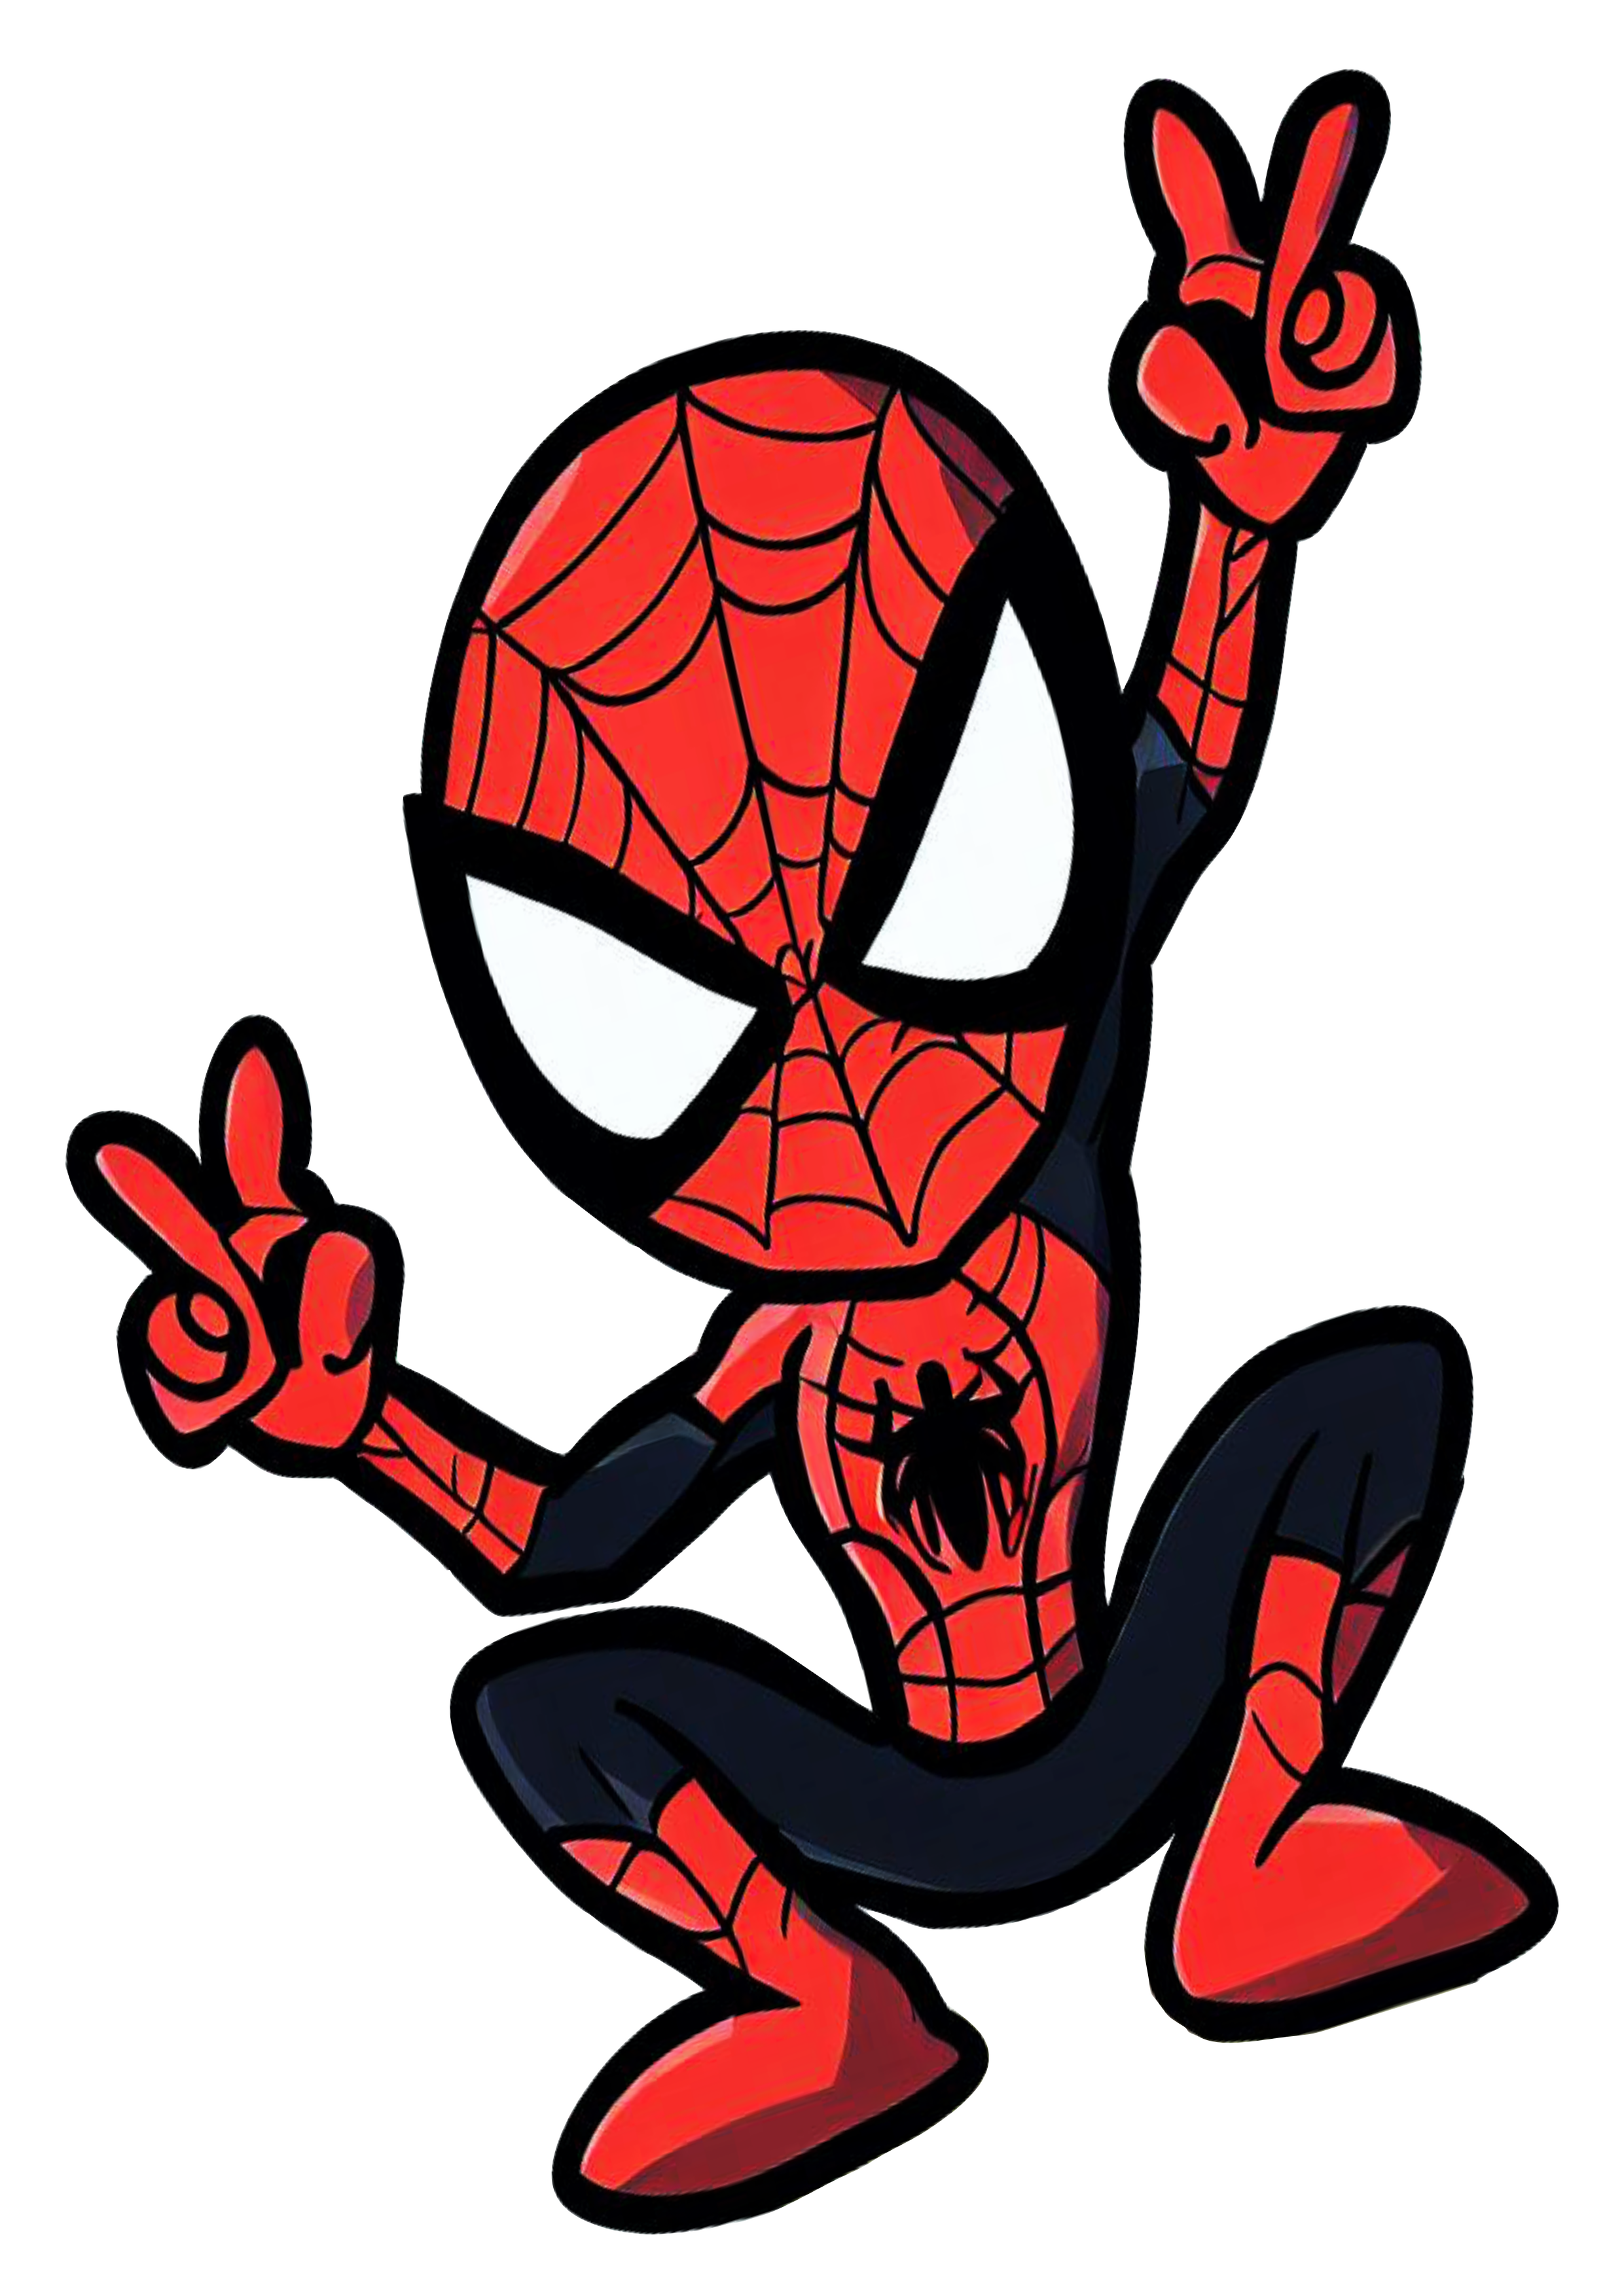 Homem aranha spider man desenho simples iniciante marvel comics fundo transparente png